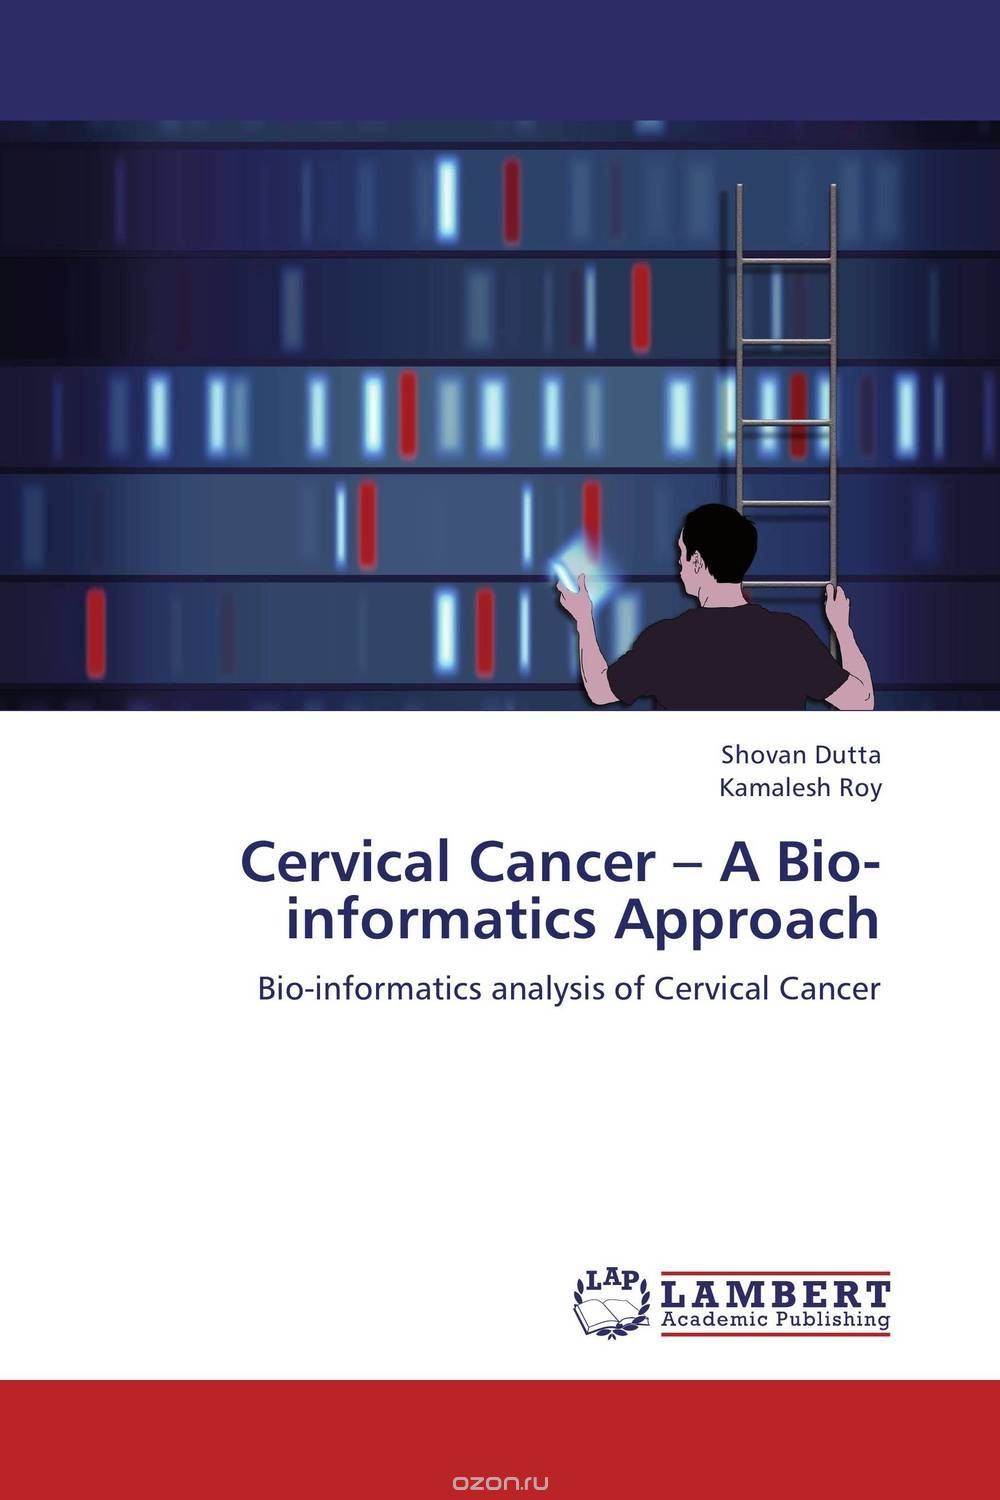 Скачать книгу "Cervical Cancer – A Bio-informatics Approach"